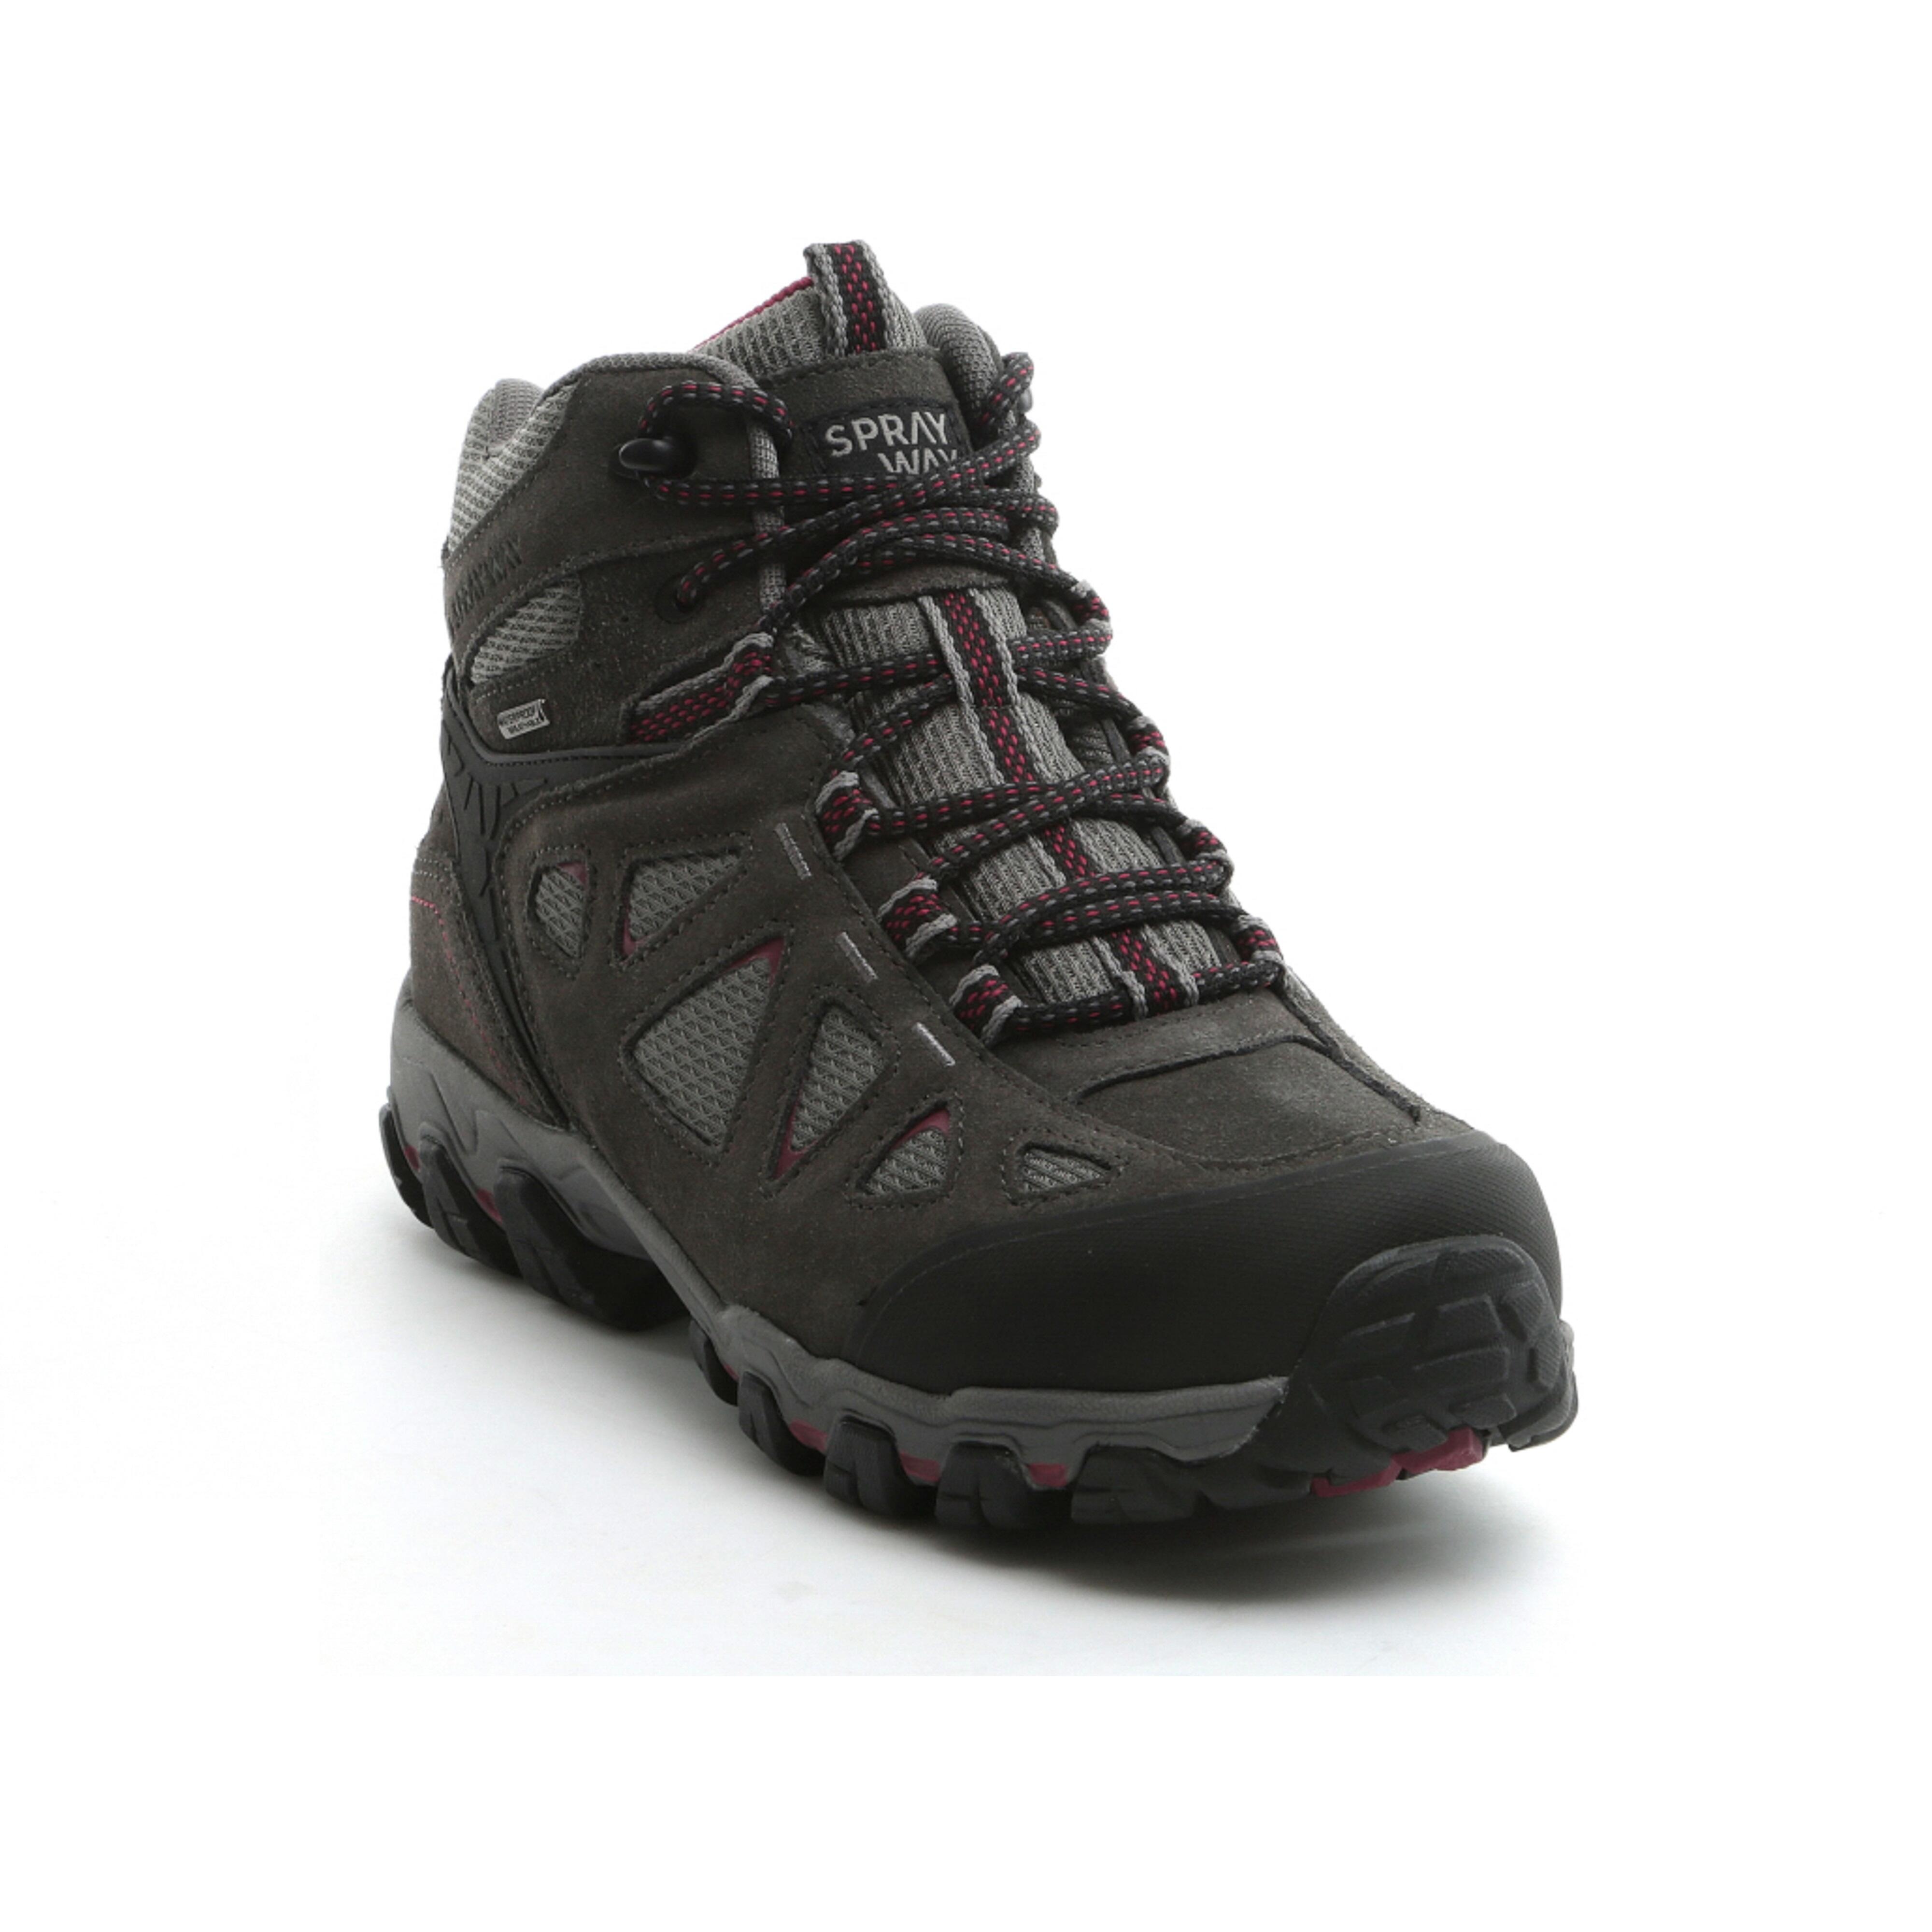 Photos - Trekking Shoes Women's Waterproof Walking Boots - Sprayway Iona Mid - Black